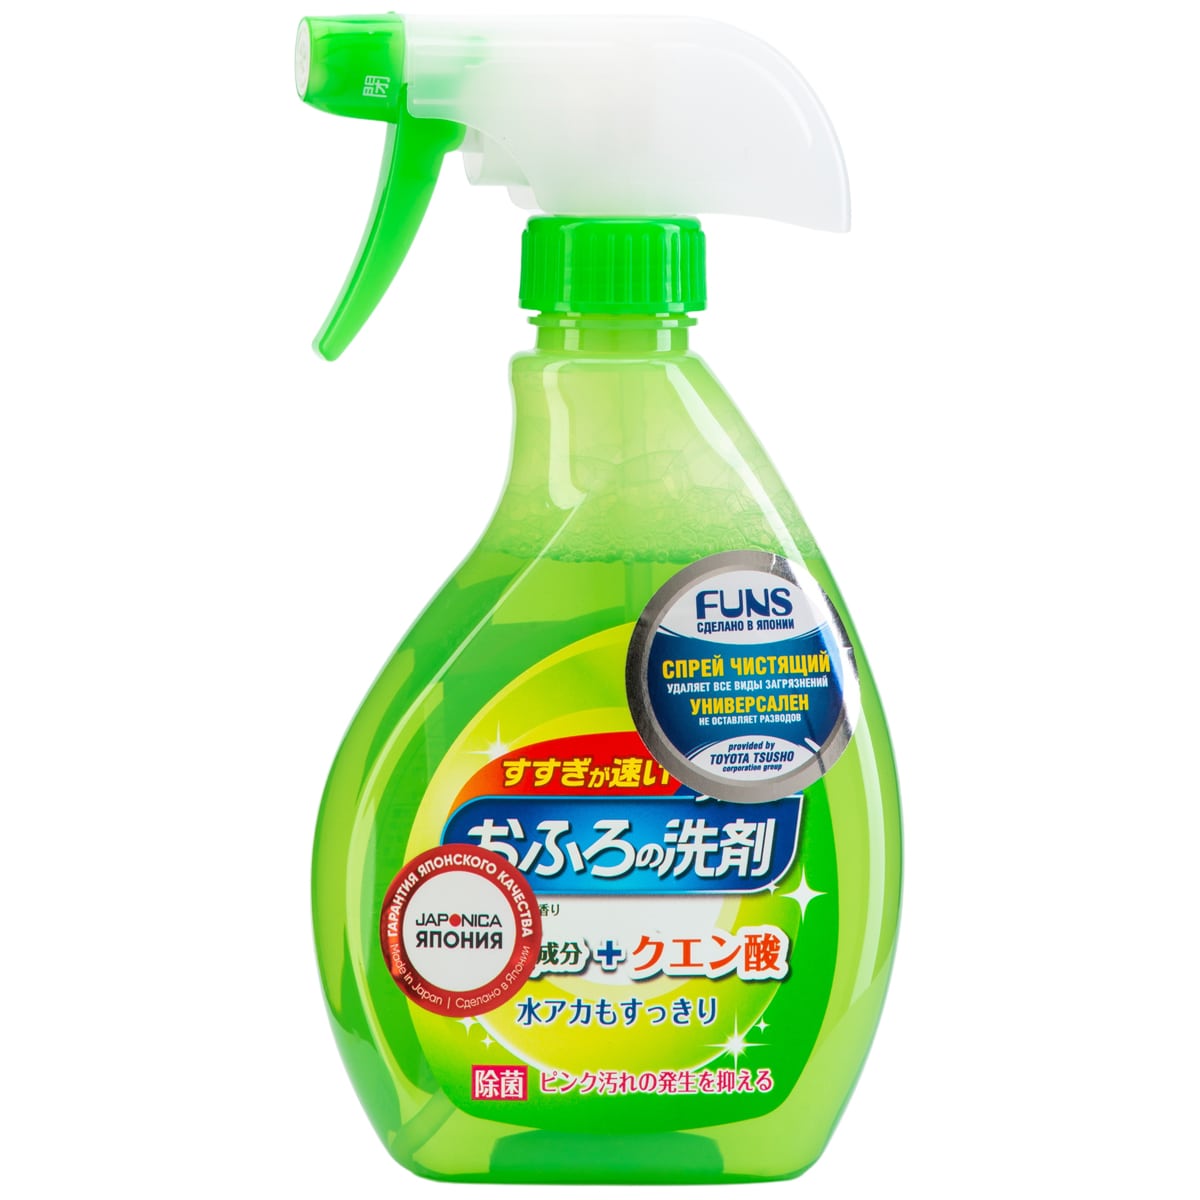 Funs Спрей чистящий для ванной комнаты с ароматом свежей зелени, 380 мл (Funs, Для уборки)